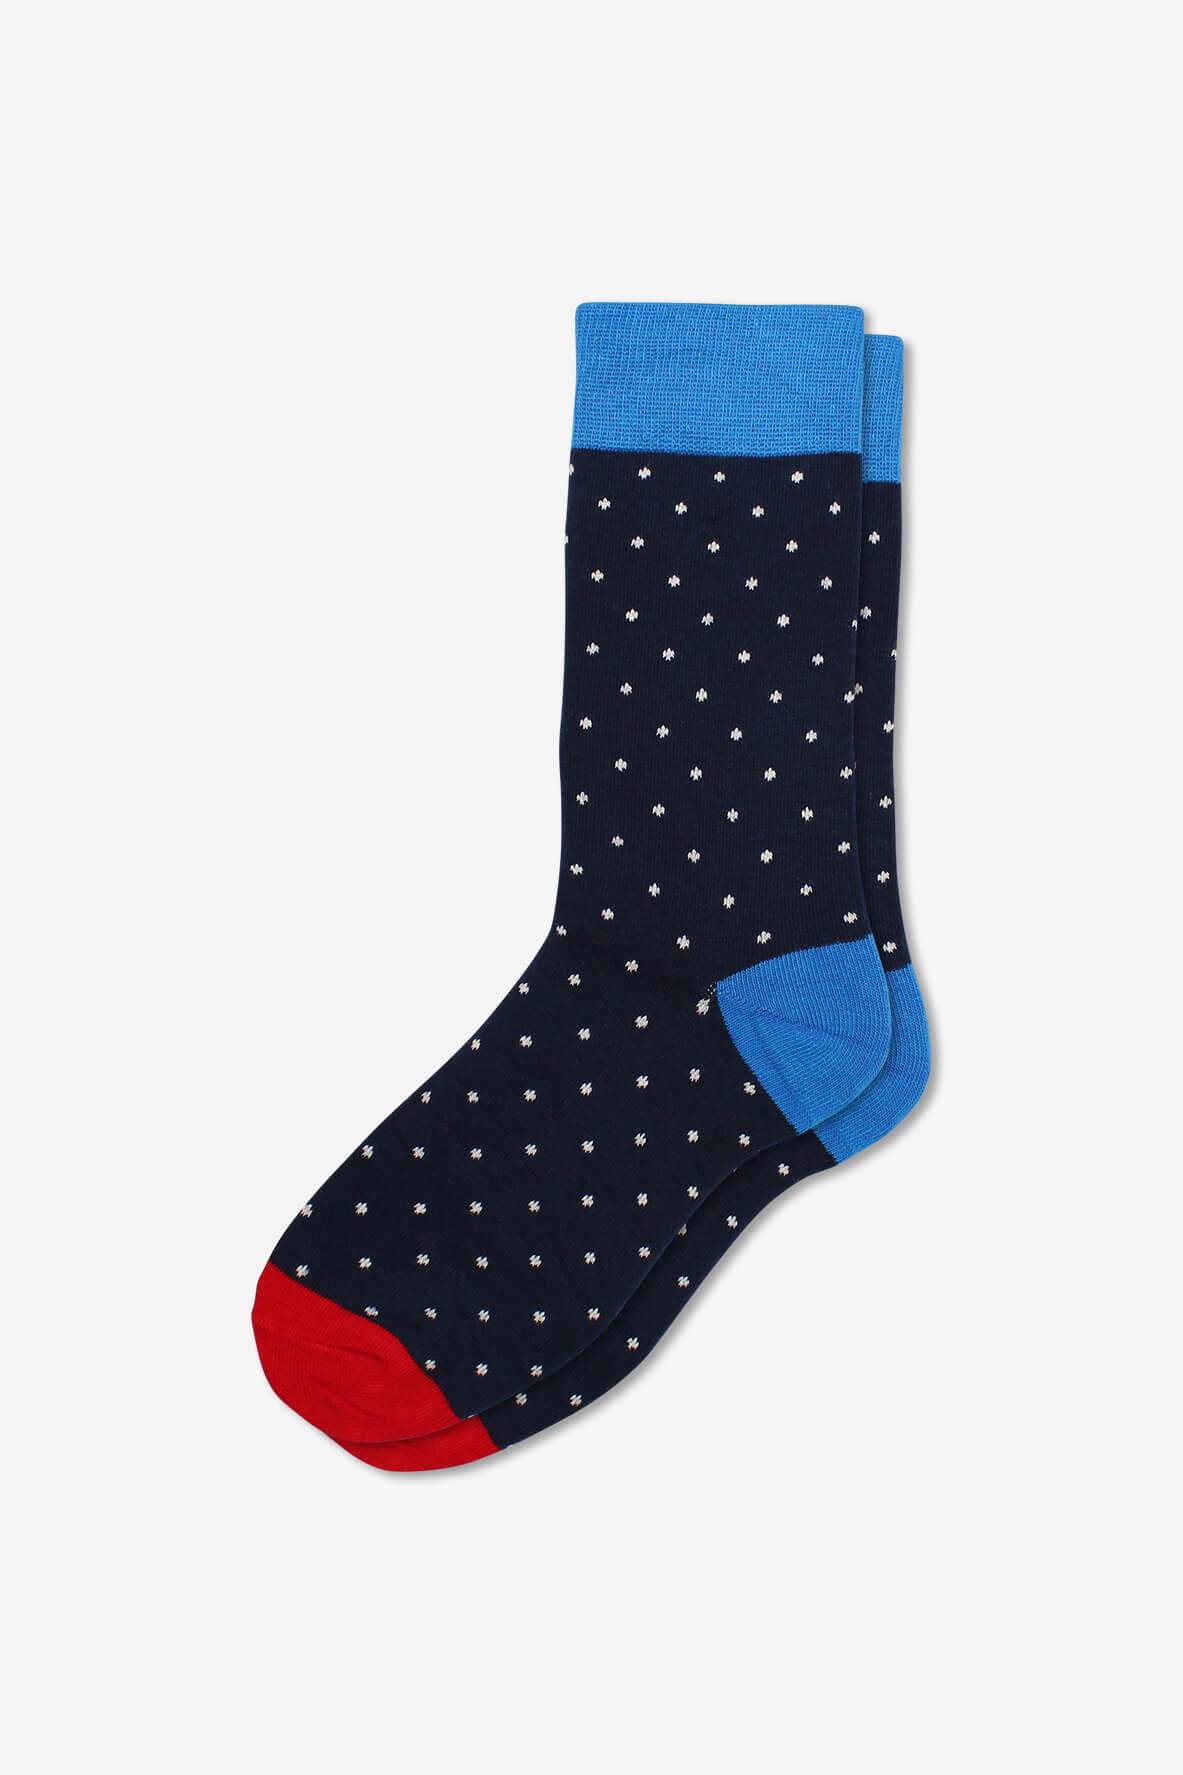 Socks IMG_5345, socks, GoTie